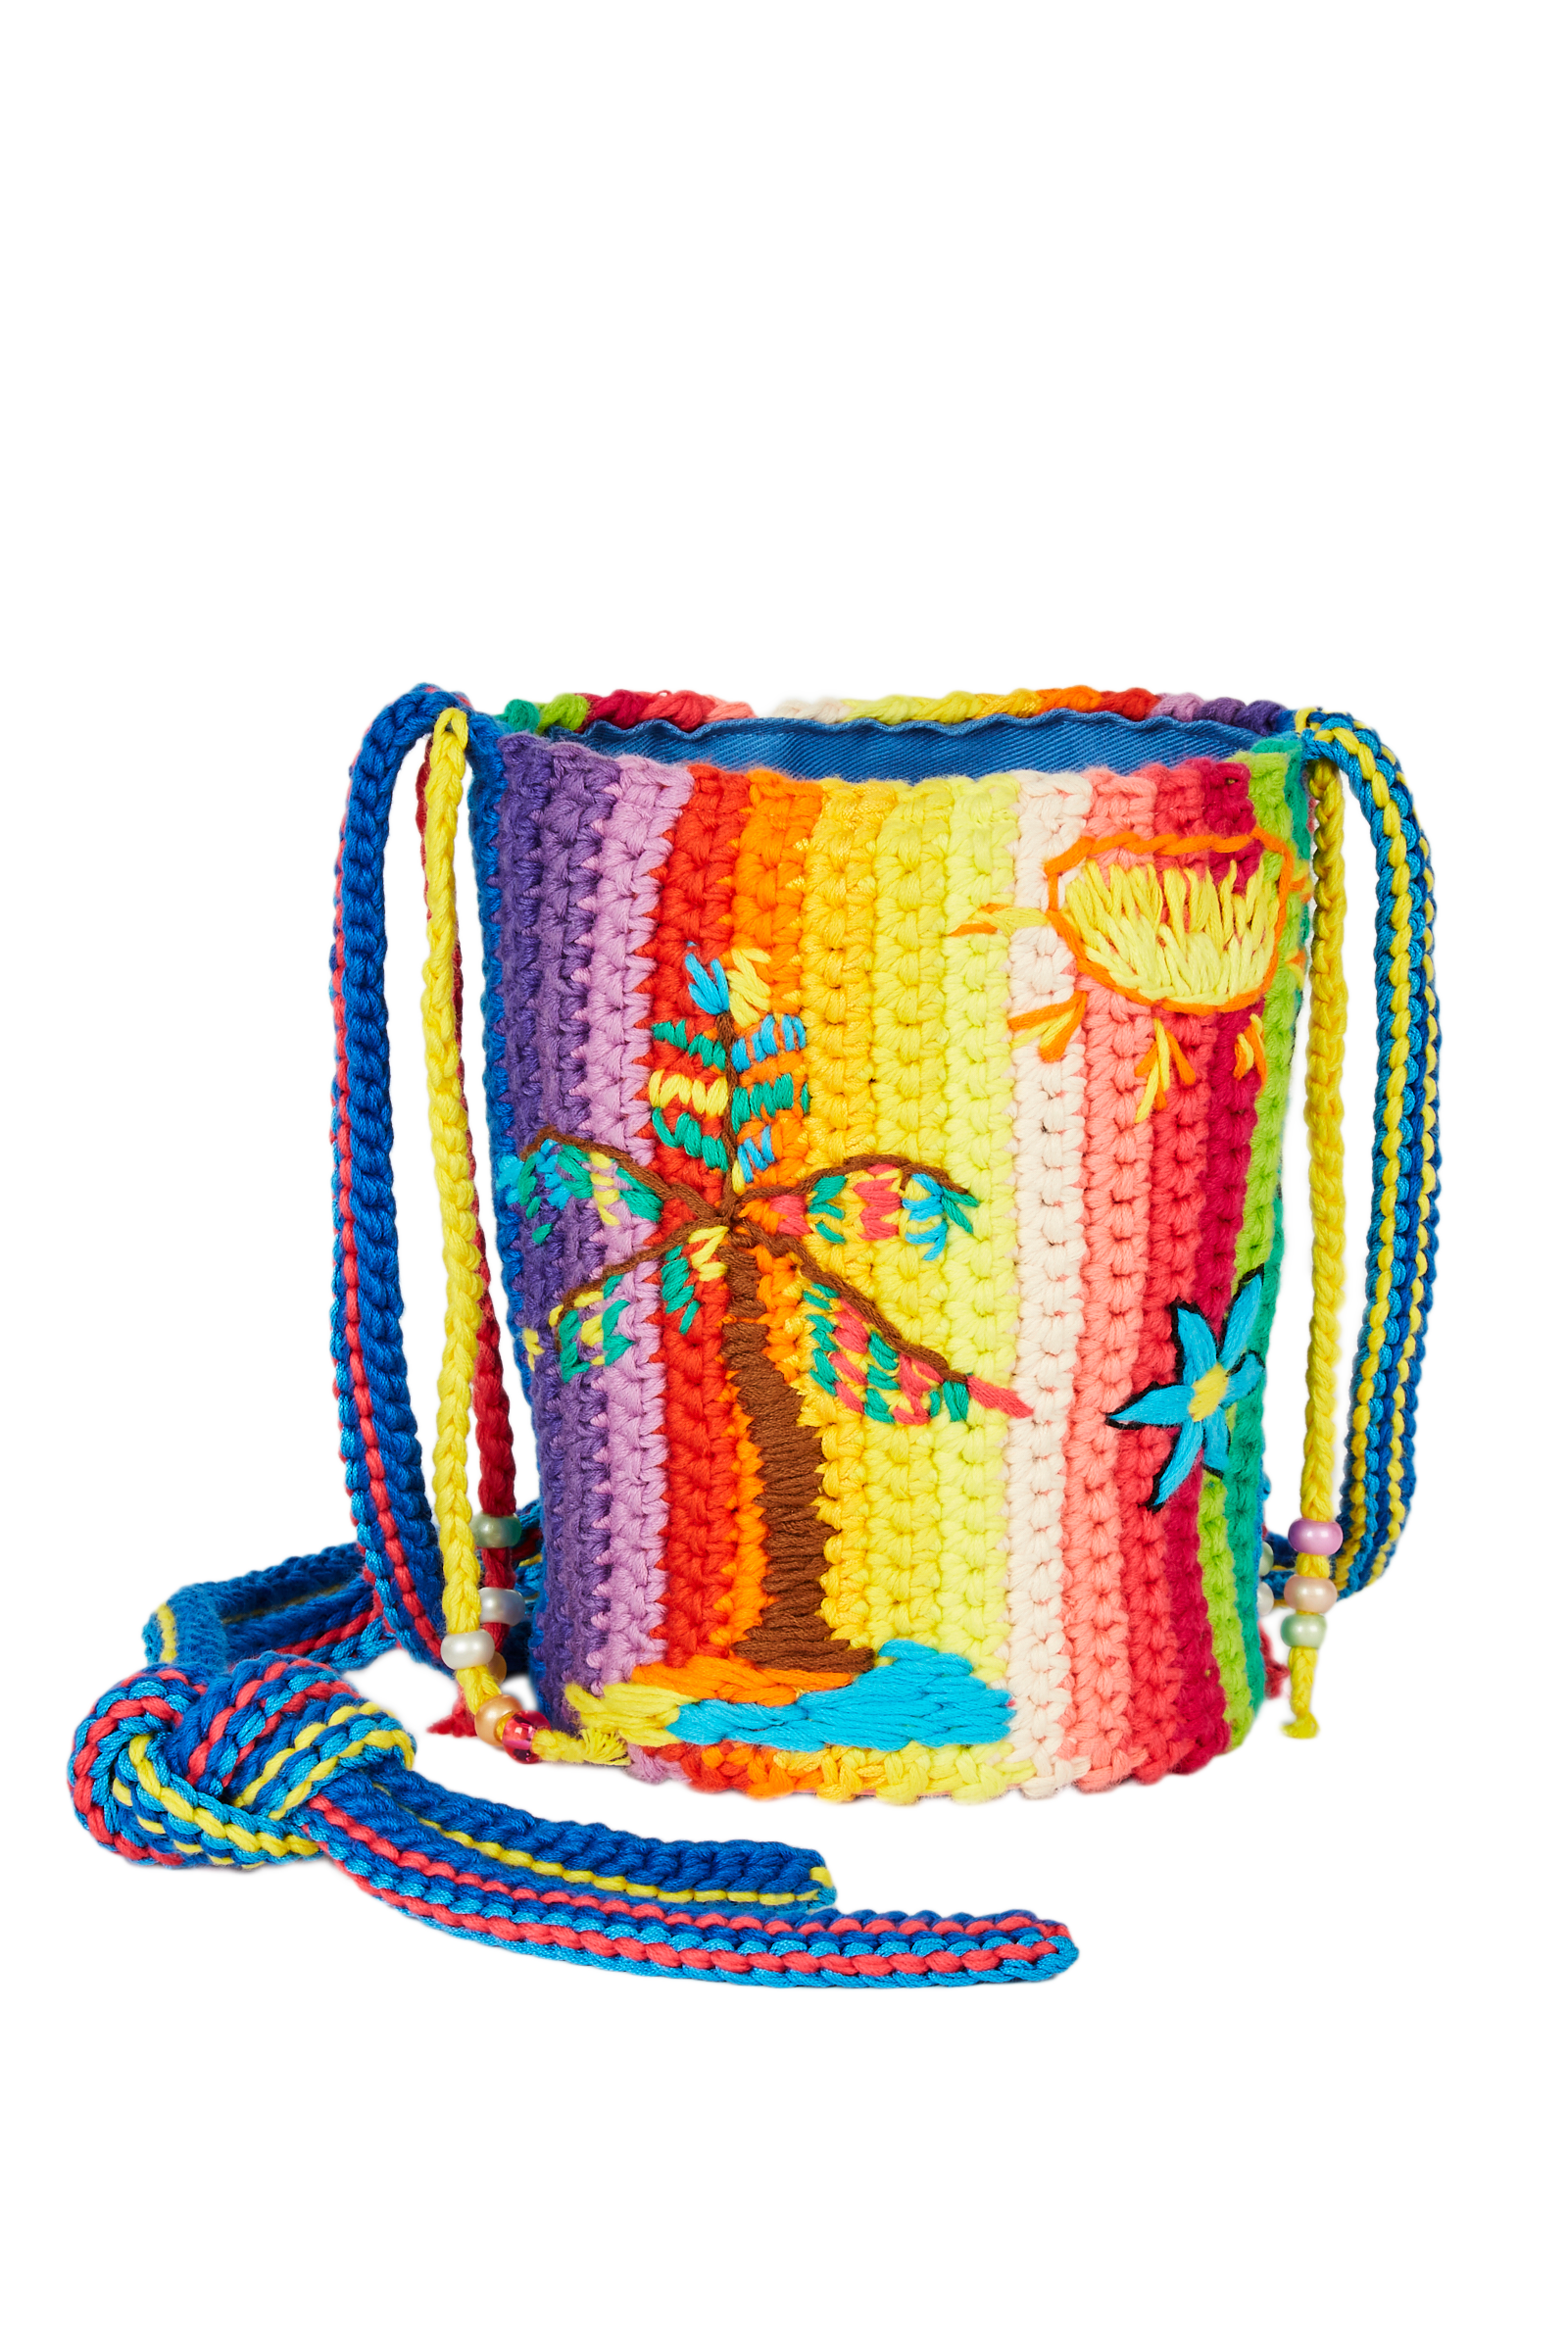 Dégradé Rainbow Crochet Bag 